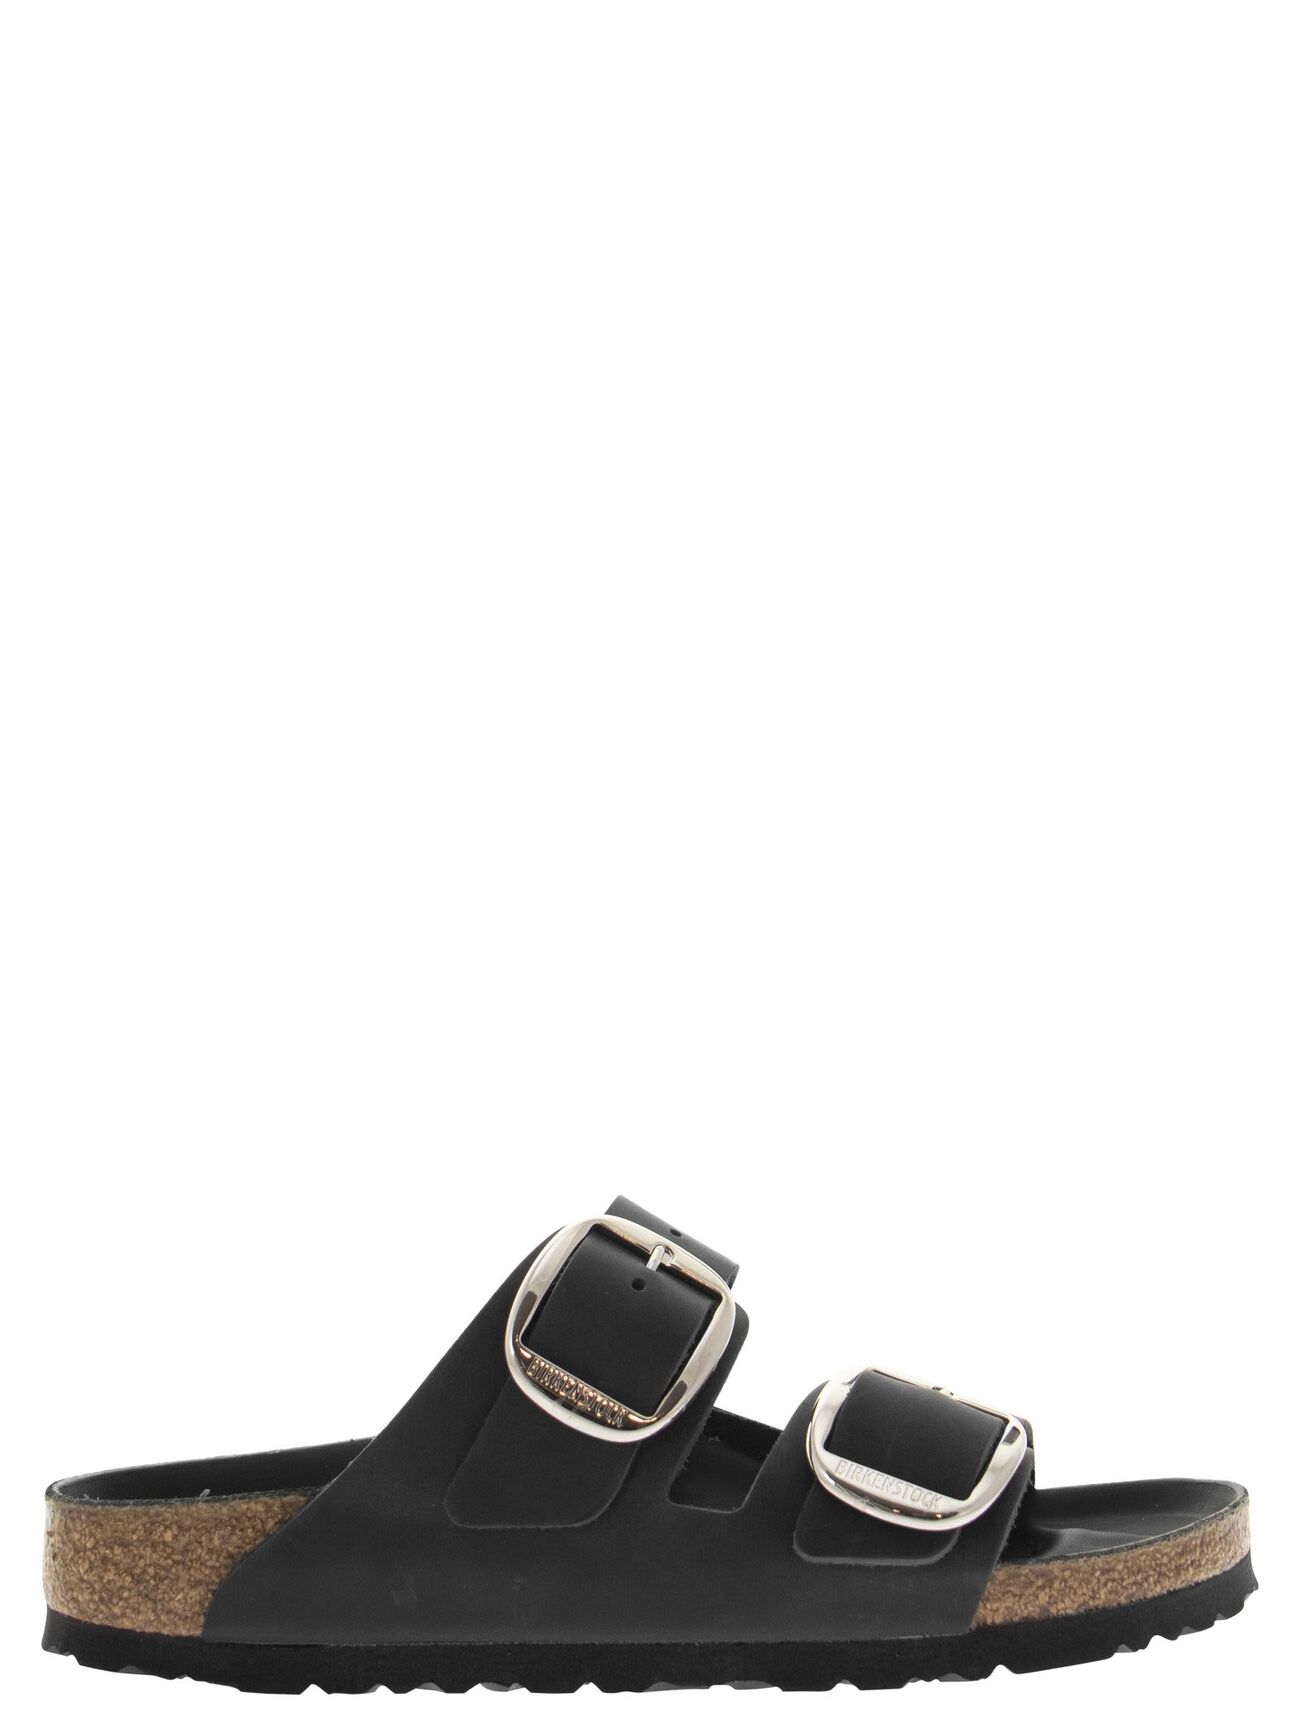 Birkenstock Arizona - Slipper Sandal in black